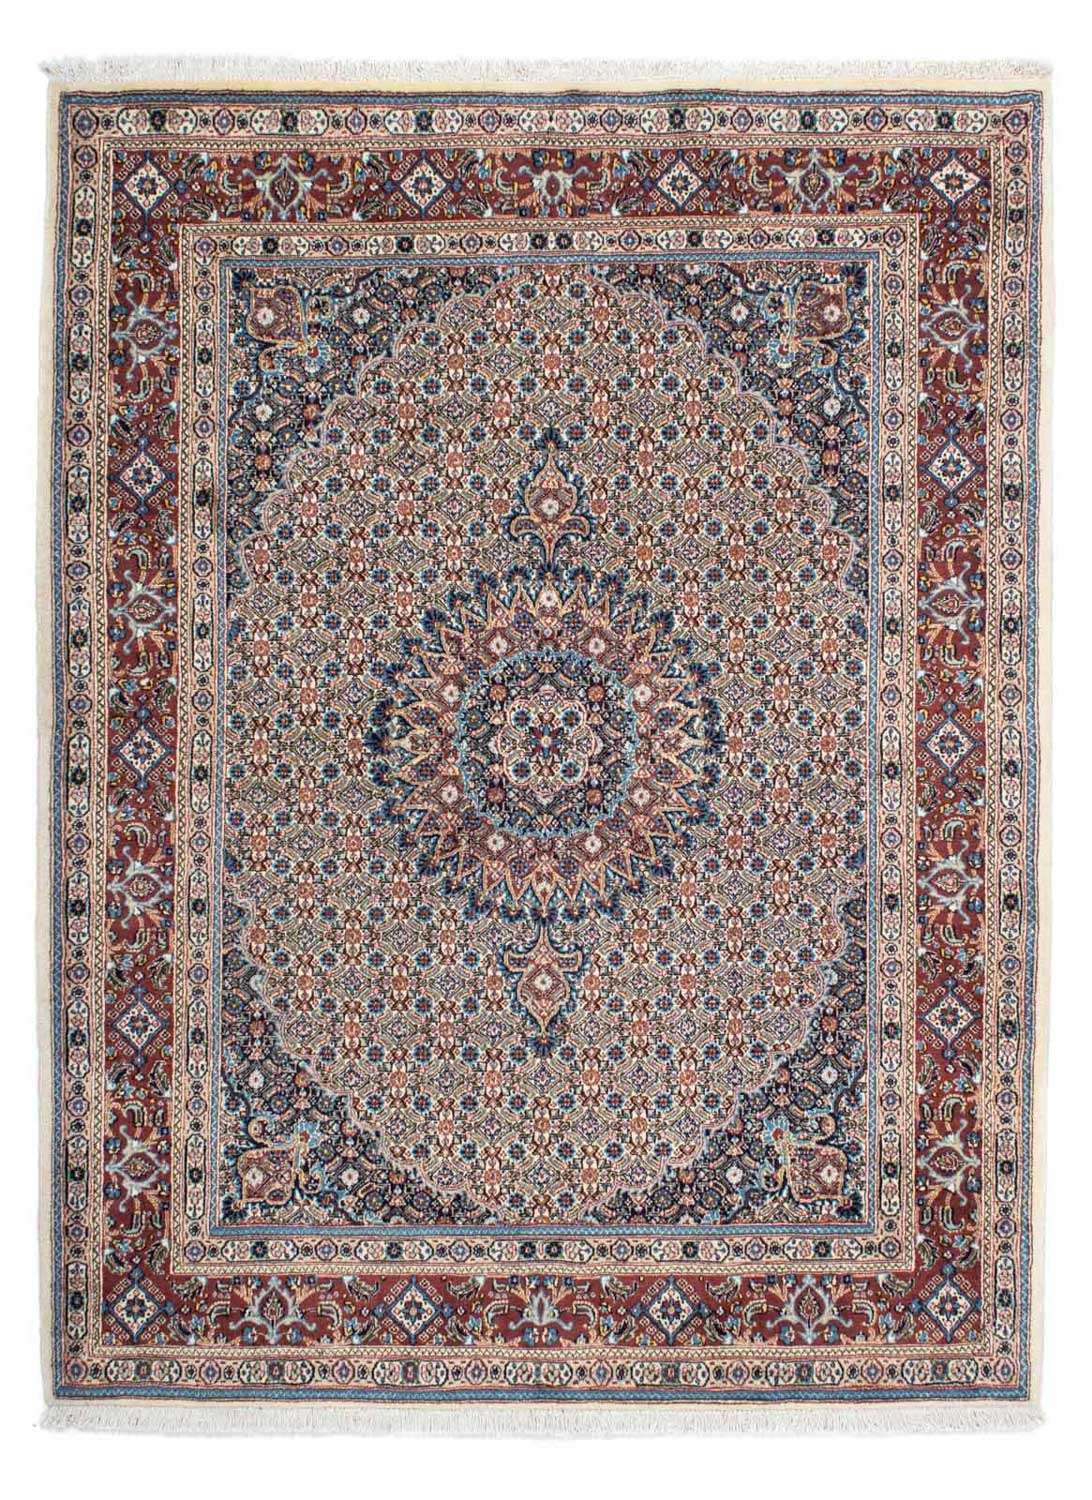 Persisk teppe - klassisk - 200 x 153 cm - beige